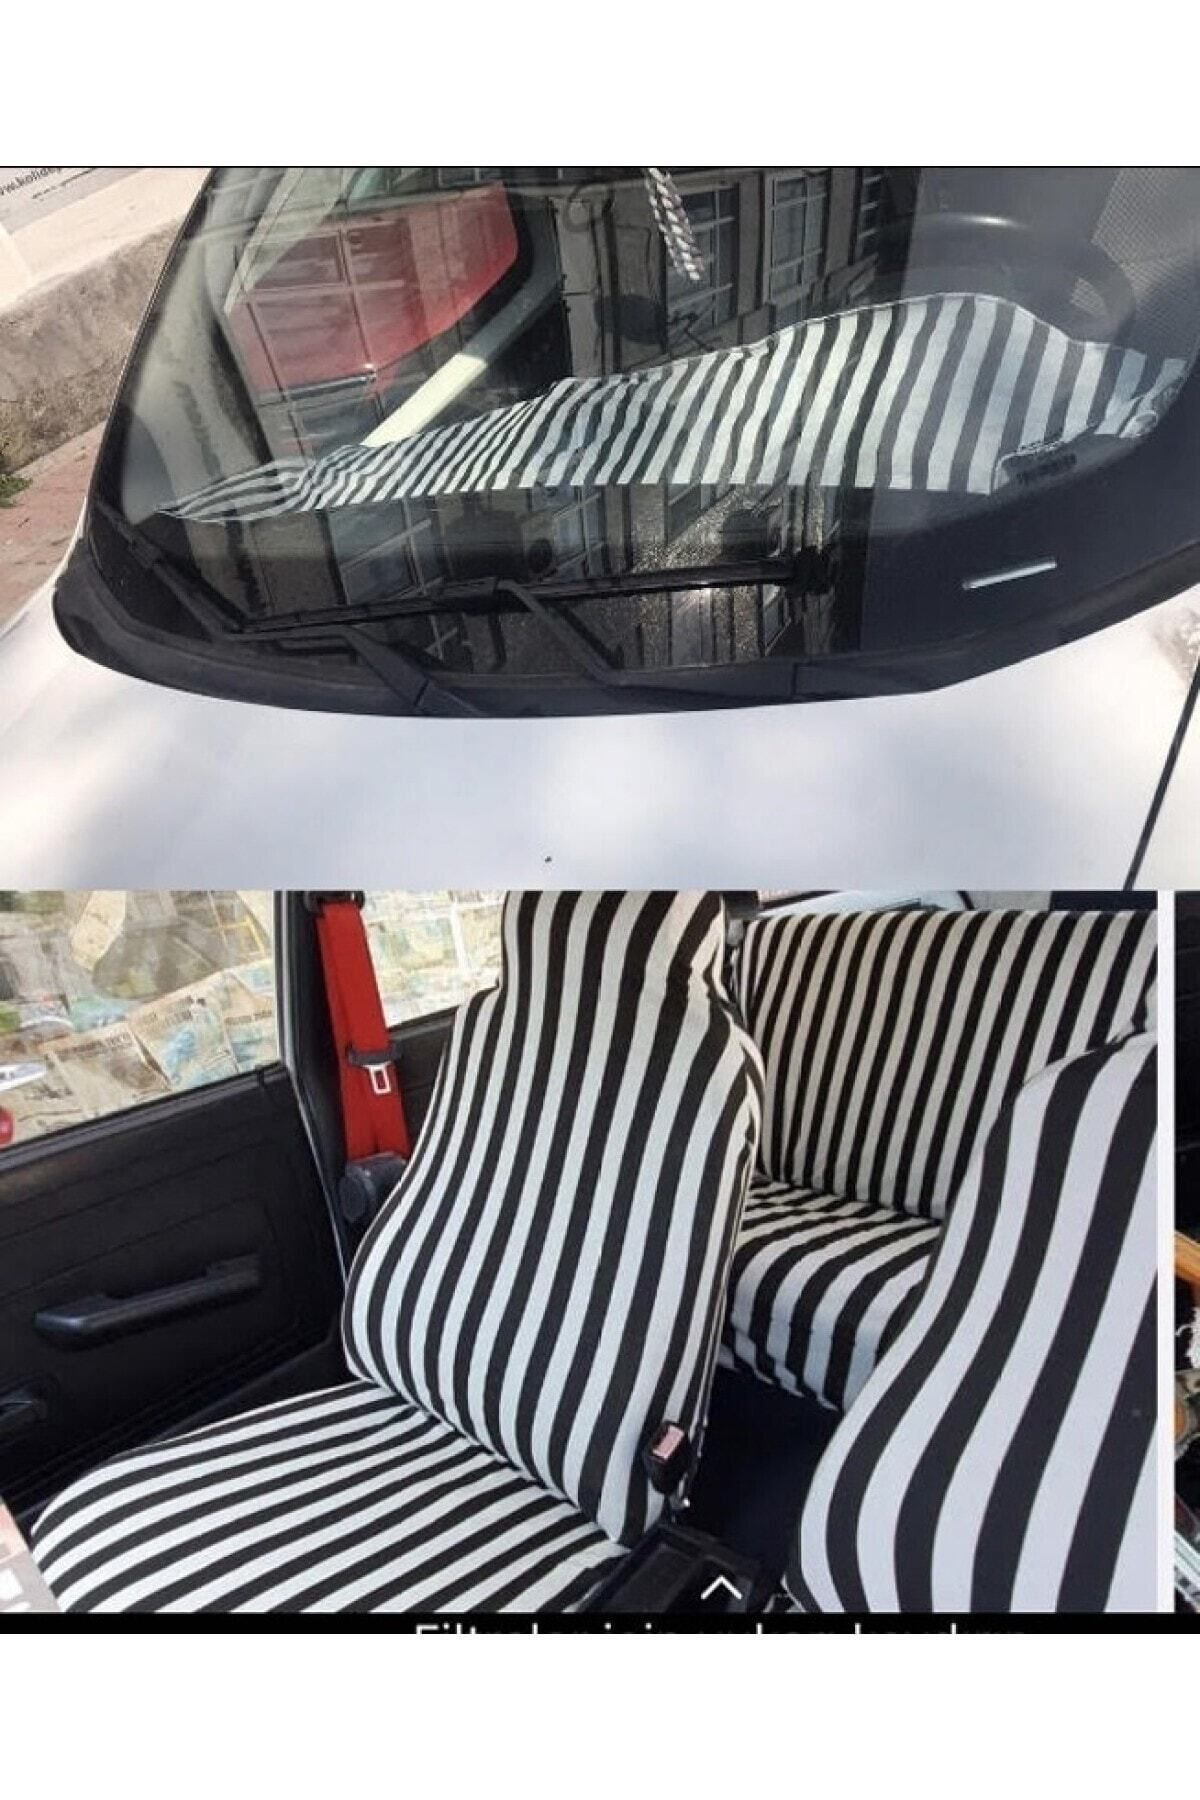 Zifona Fiat / Tofaş Şahin Uyumlu Zebra Pratik Servis Kılıfı Ve Torpido Koruyucu Örtü Set Siyah-beyaz